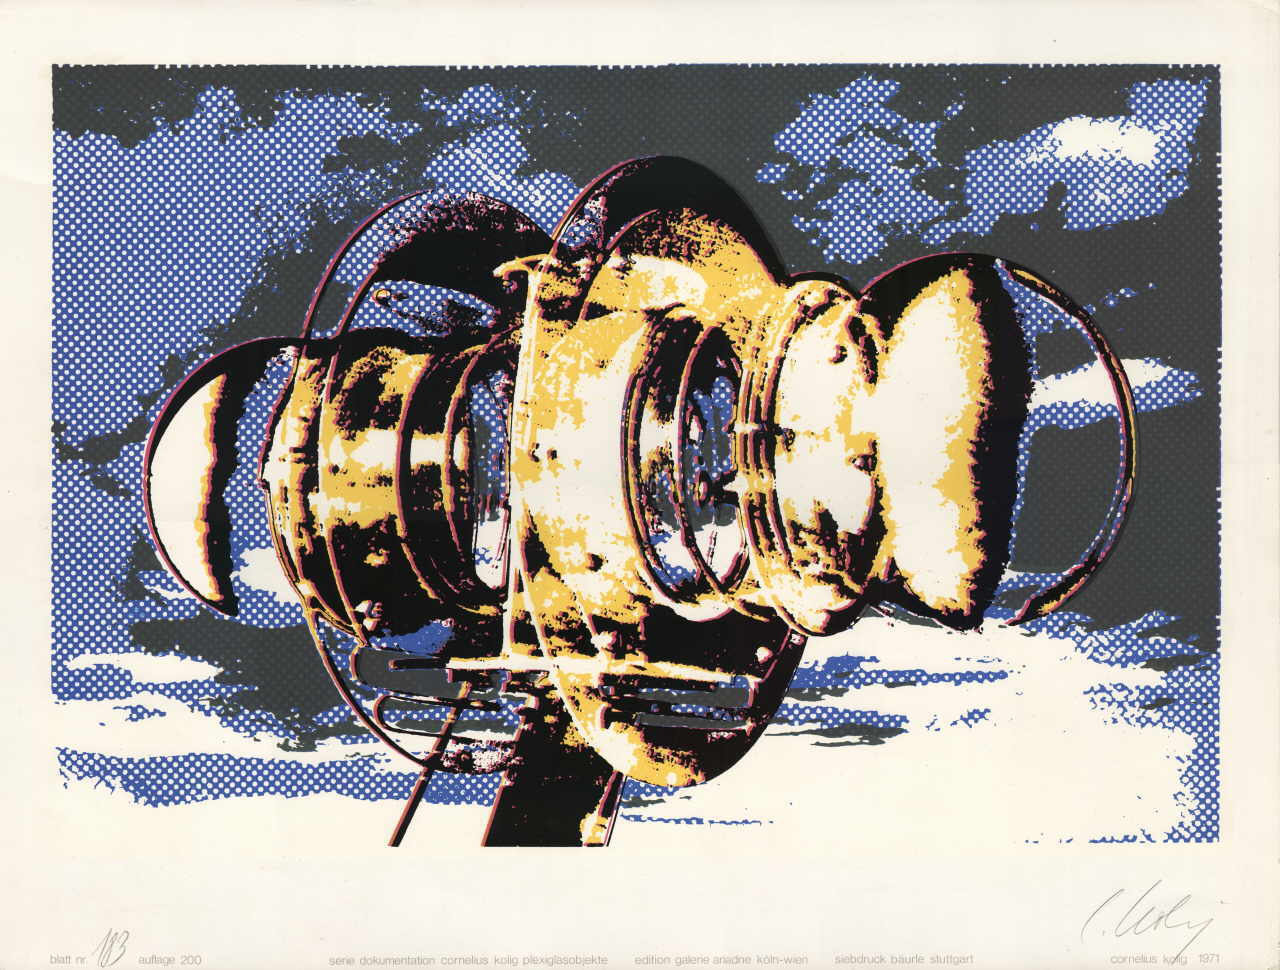 Kolig Cornelius 
Serie "Dokumentation Cornelius Kolig Plexiglasobjekte", 1971
serigrafía
Papiergröße 50 x 65 cm